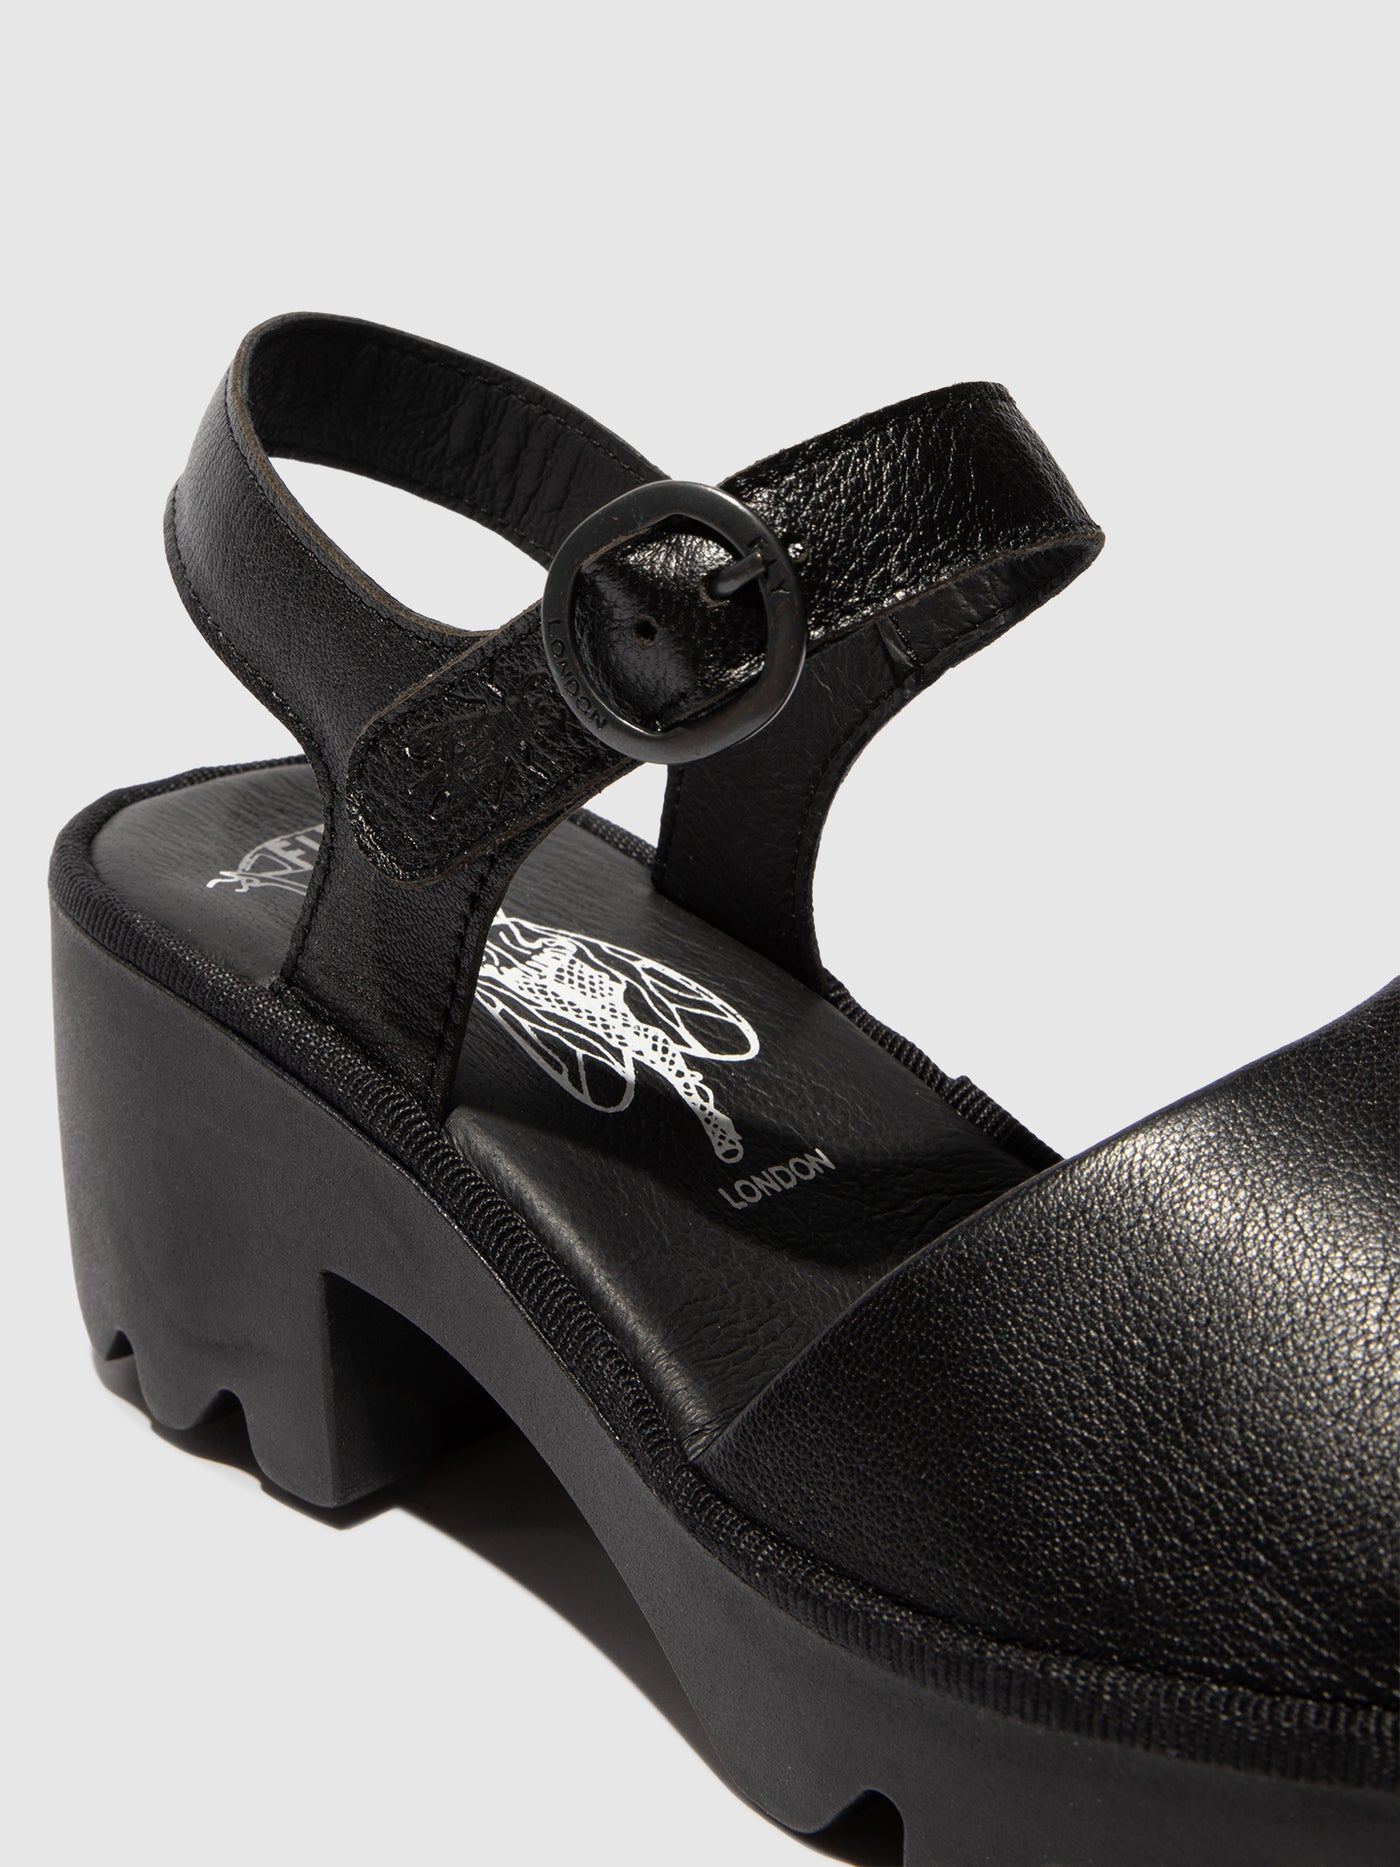 Sling-Back Sandals TULL503FLY BLACK/BLACK